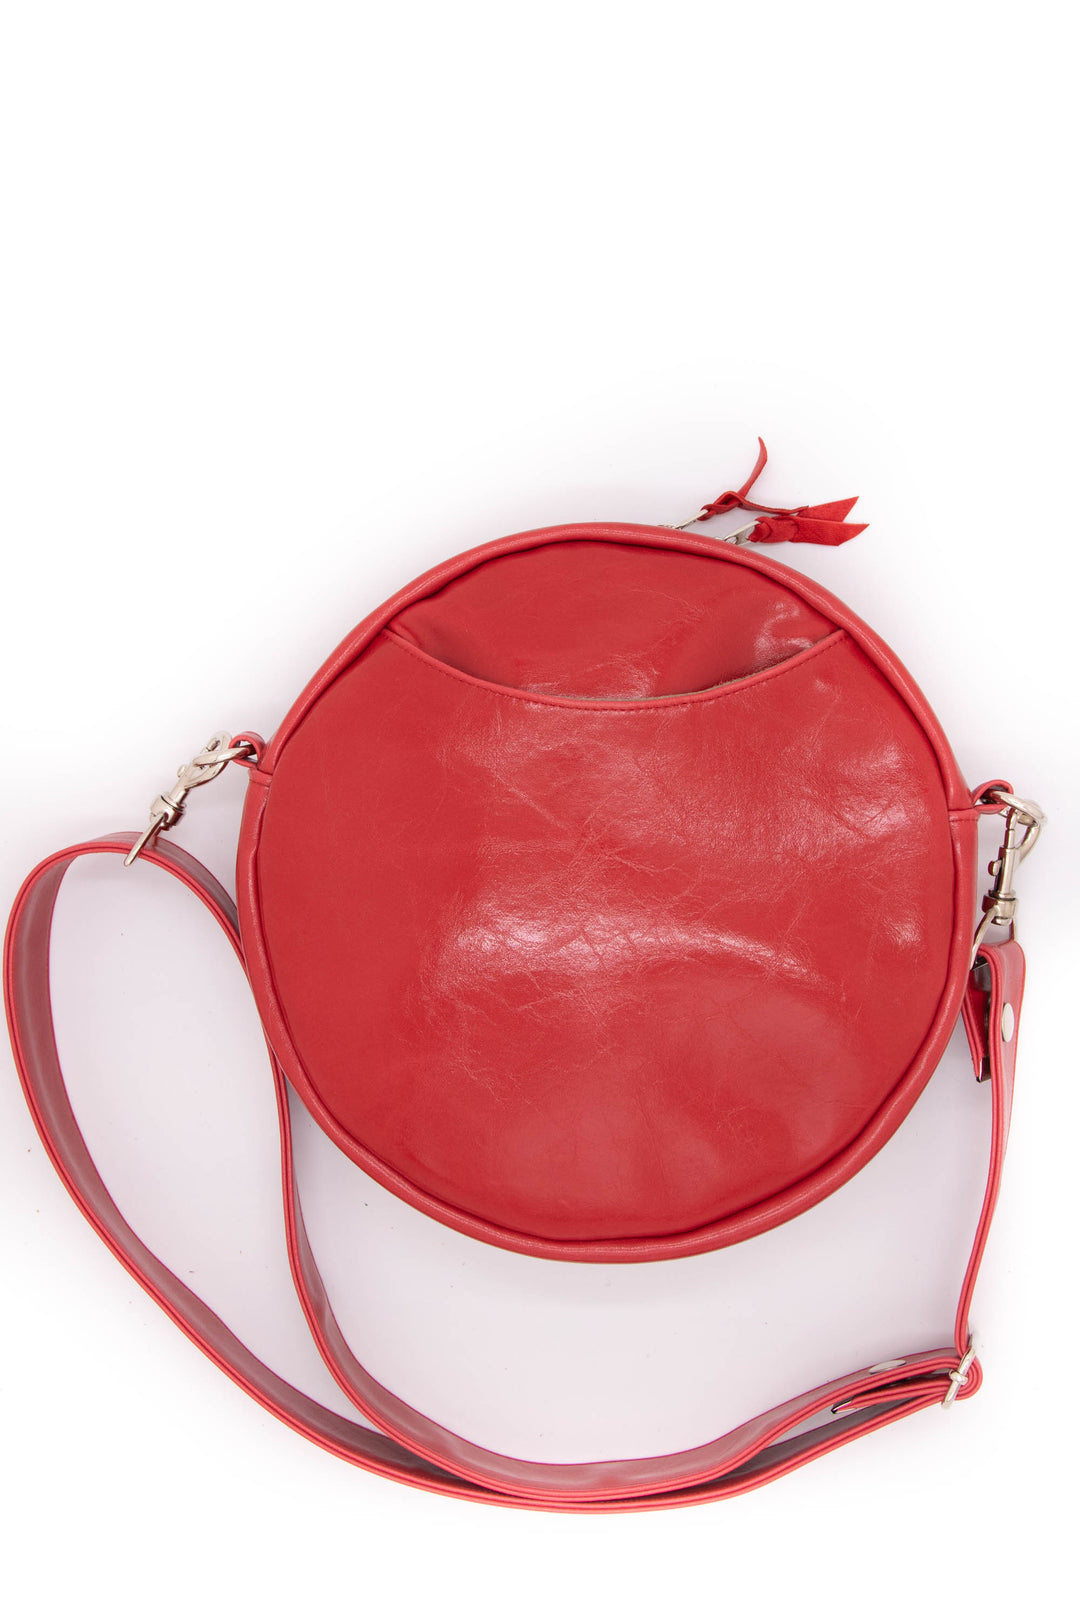 Vintage Fabric Circle Crossbody Bag - Red Tweed